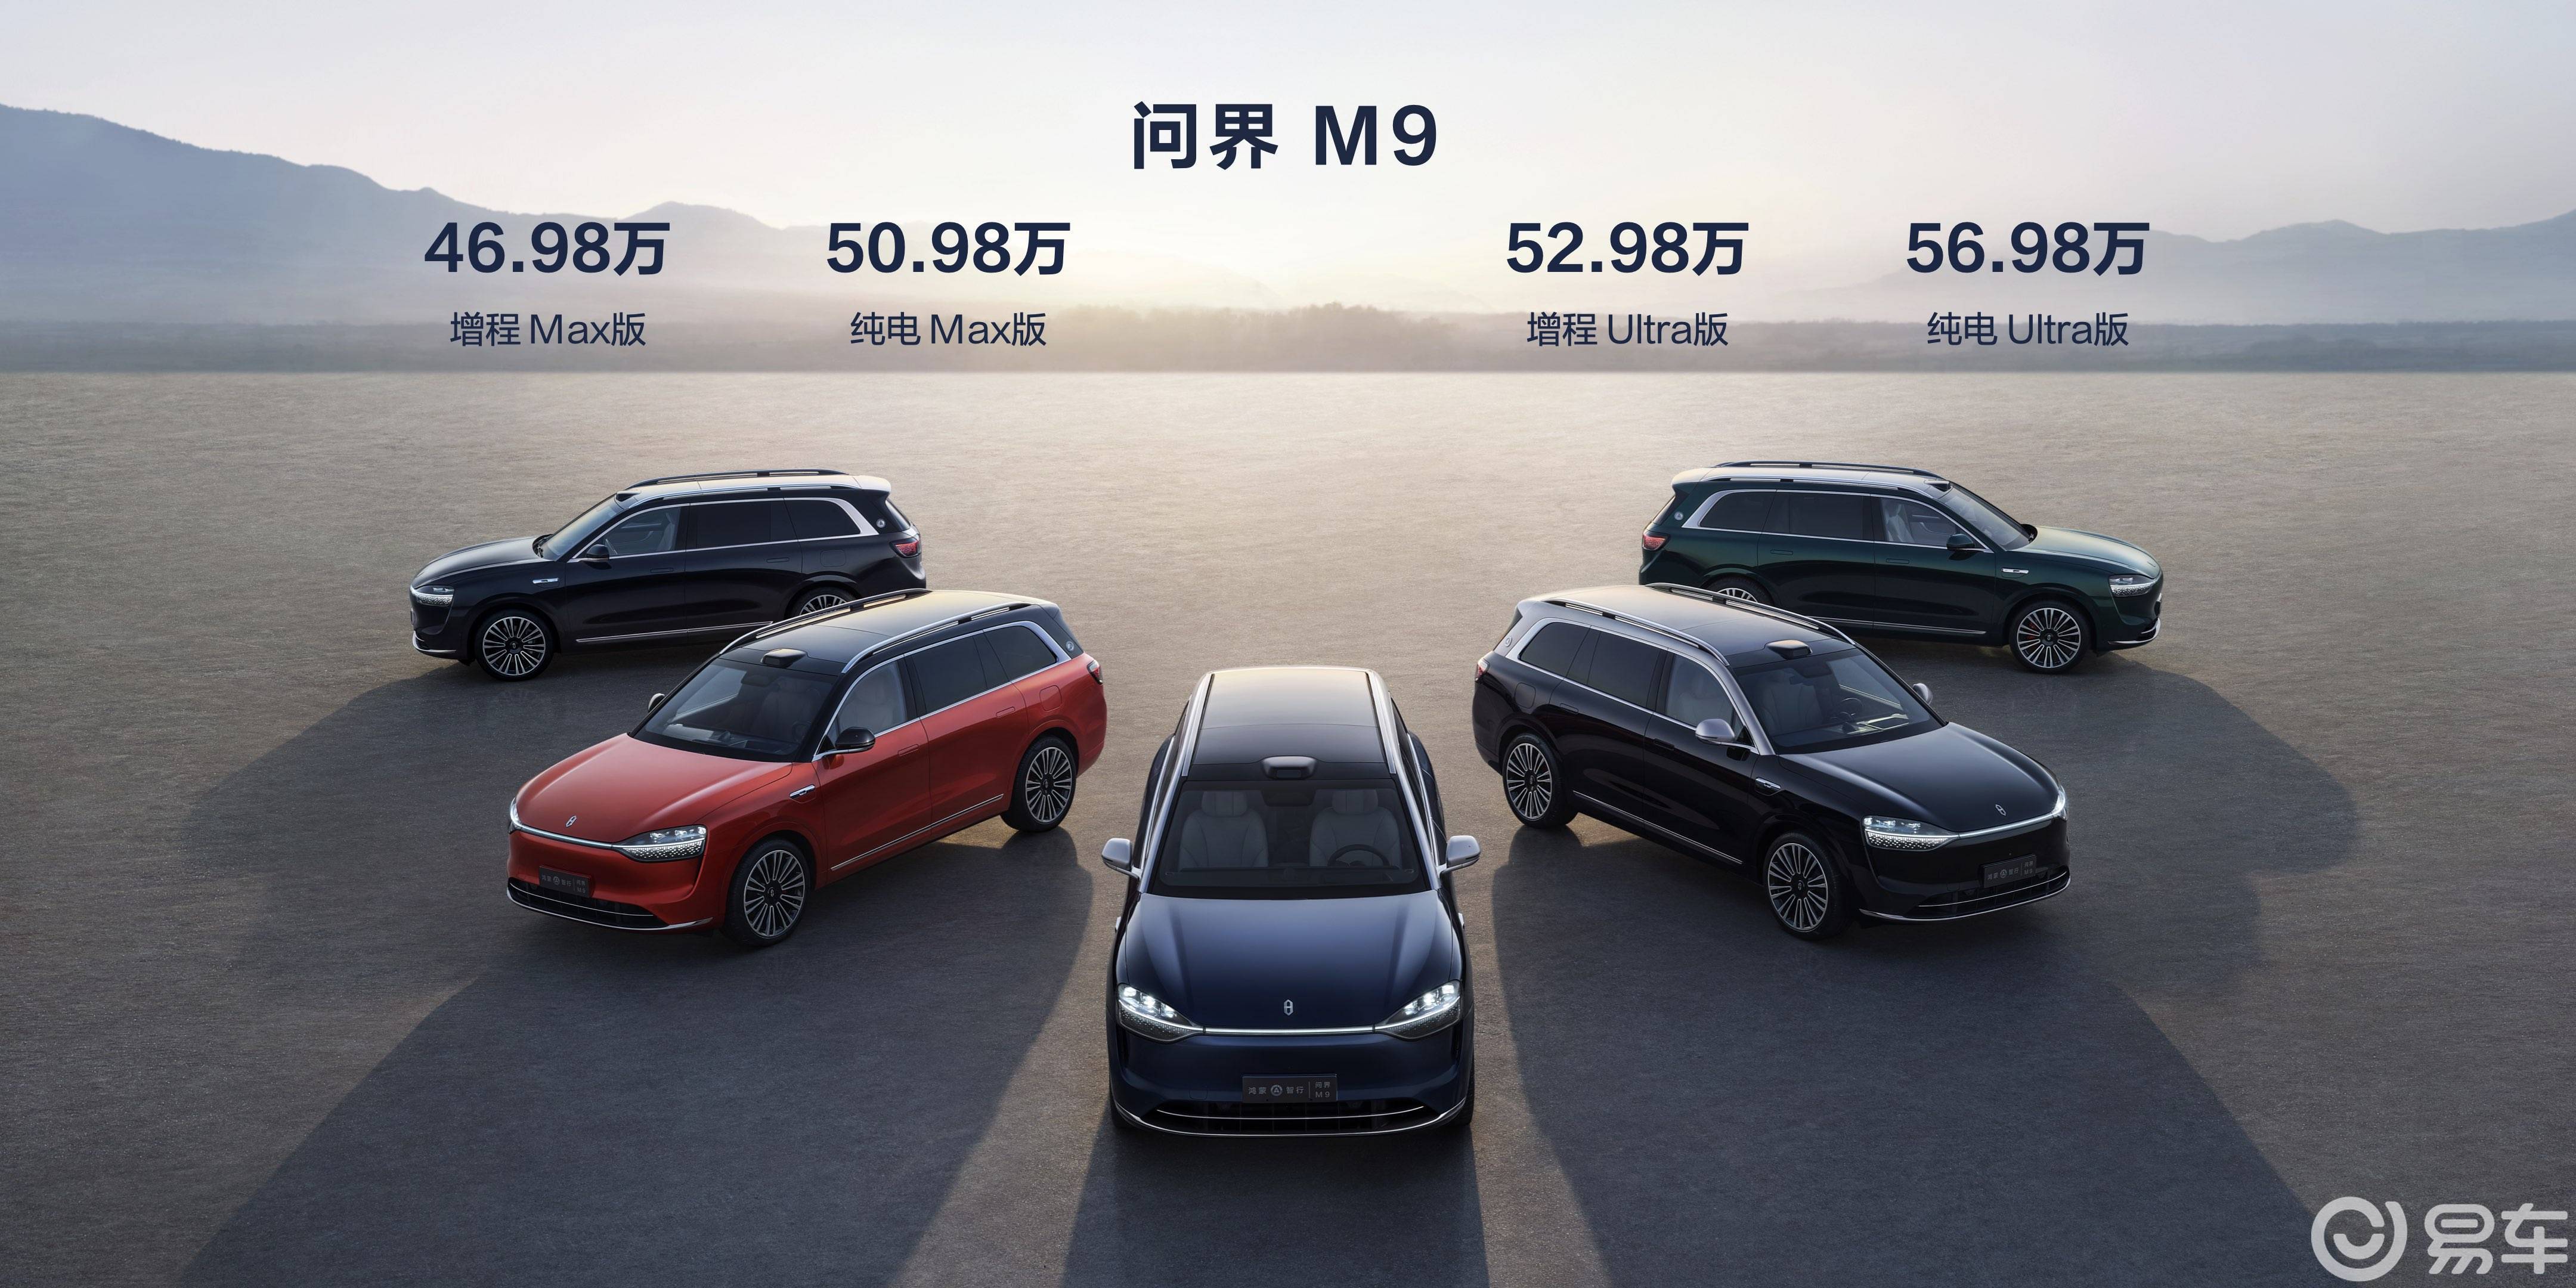 AITO问界M9正式上市新车售价46.98万元起